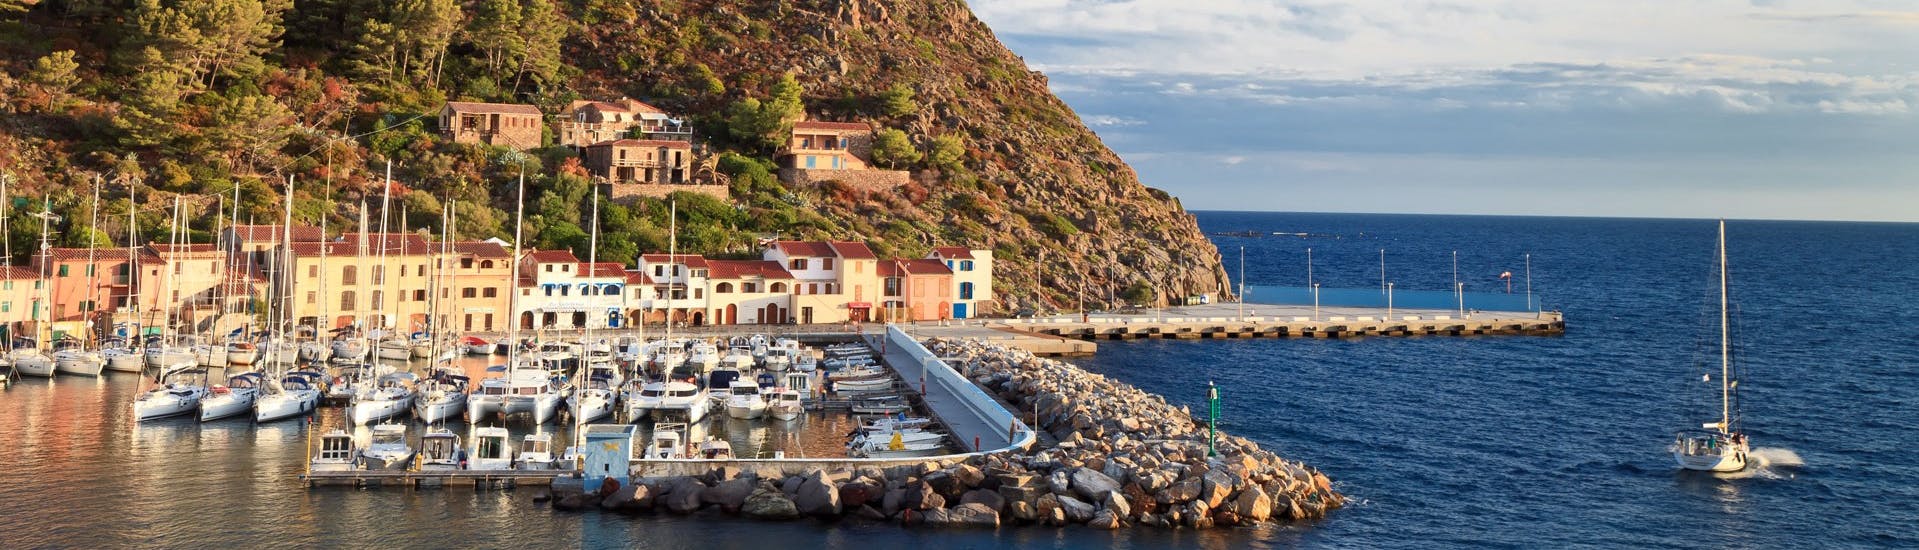 Vista del paesino di Capraia durante la nosrtra escursione in barca all'isola di Capraia da Livorno con Toscana Mini Crociere.